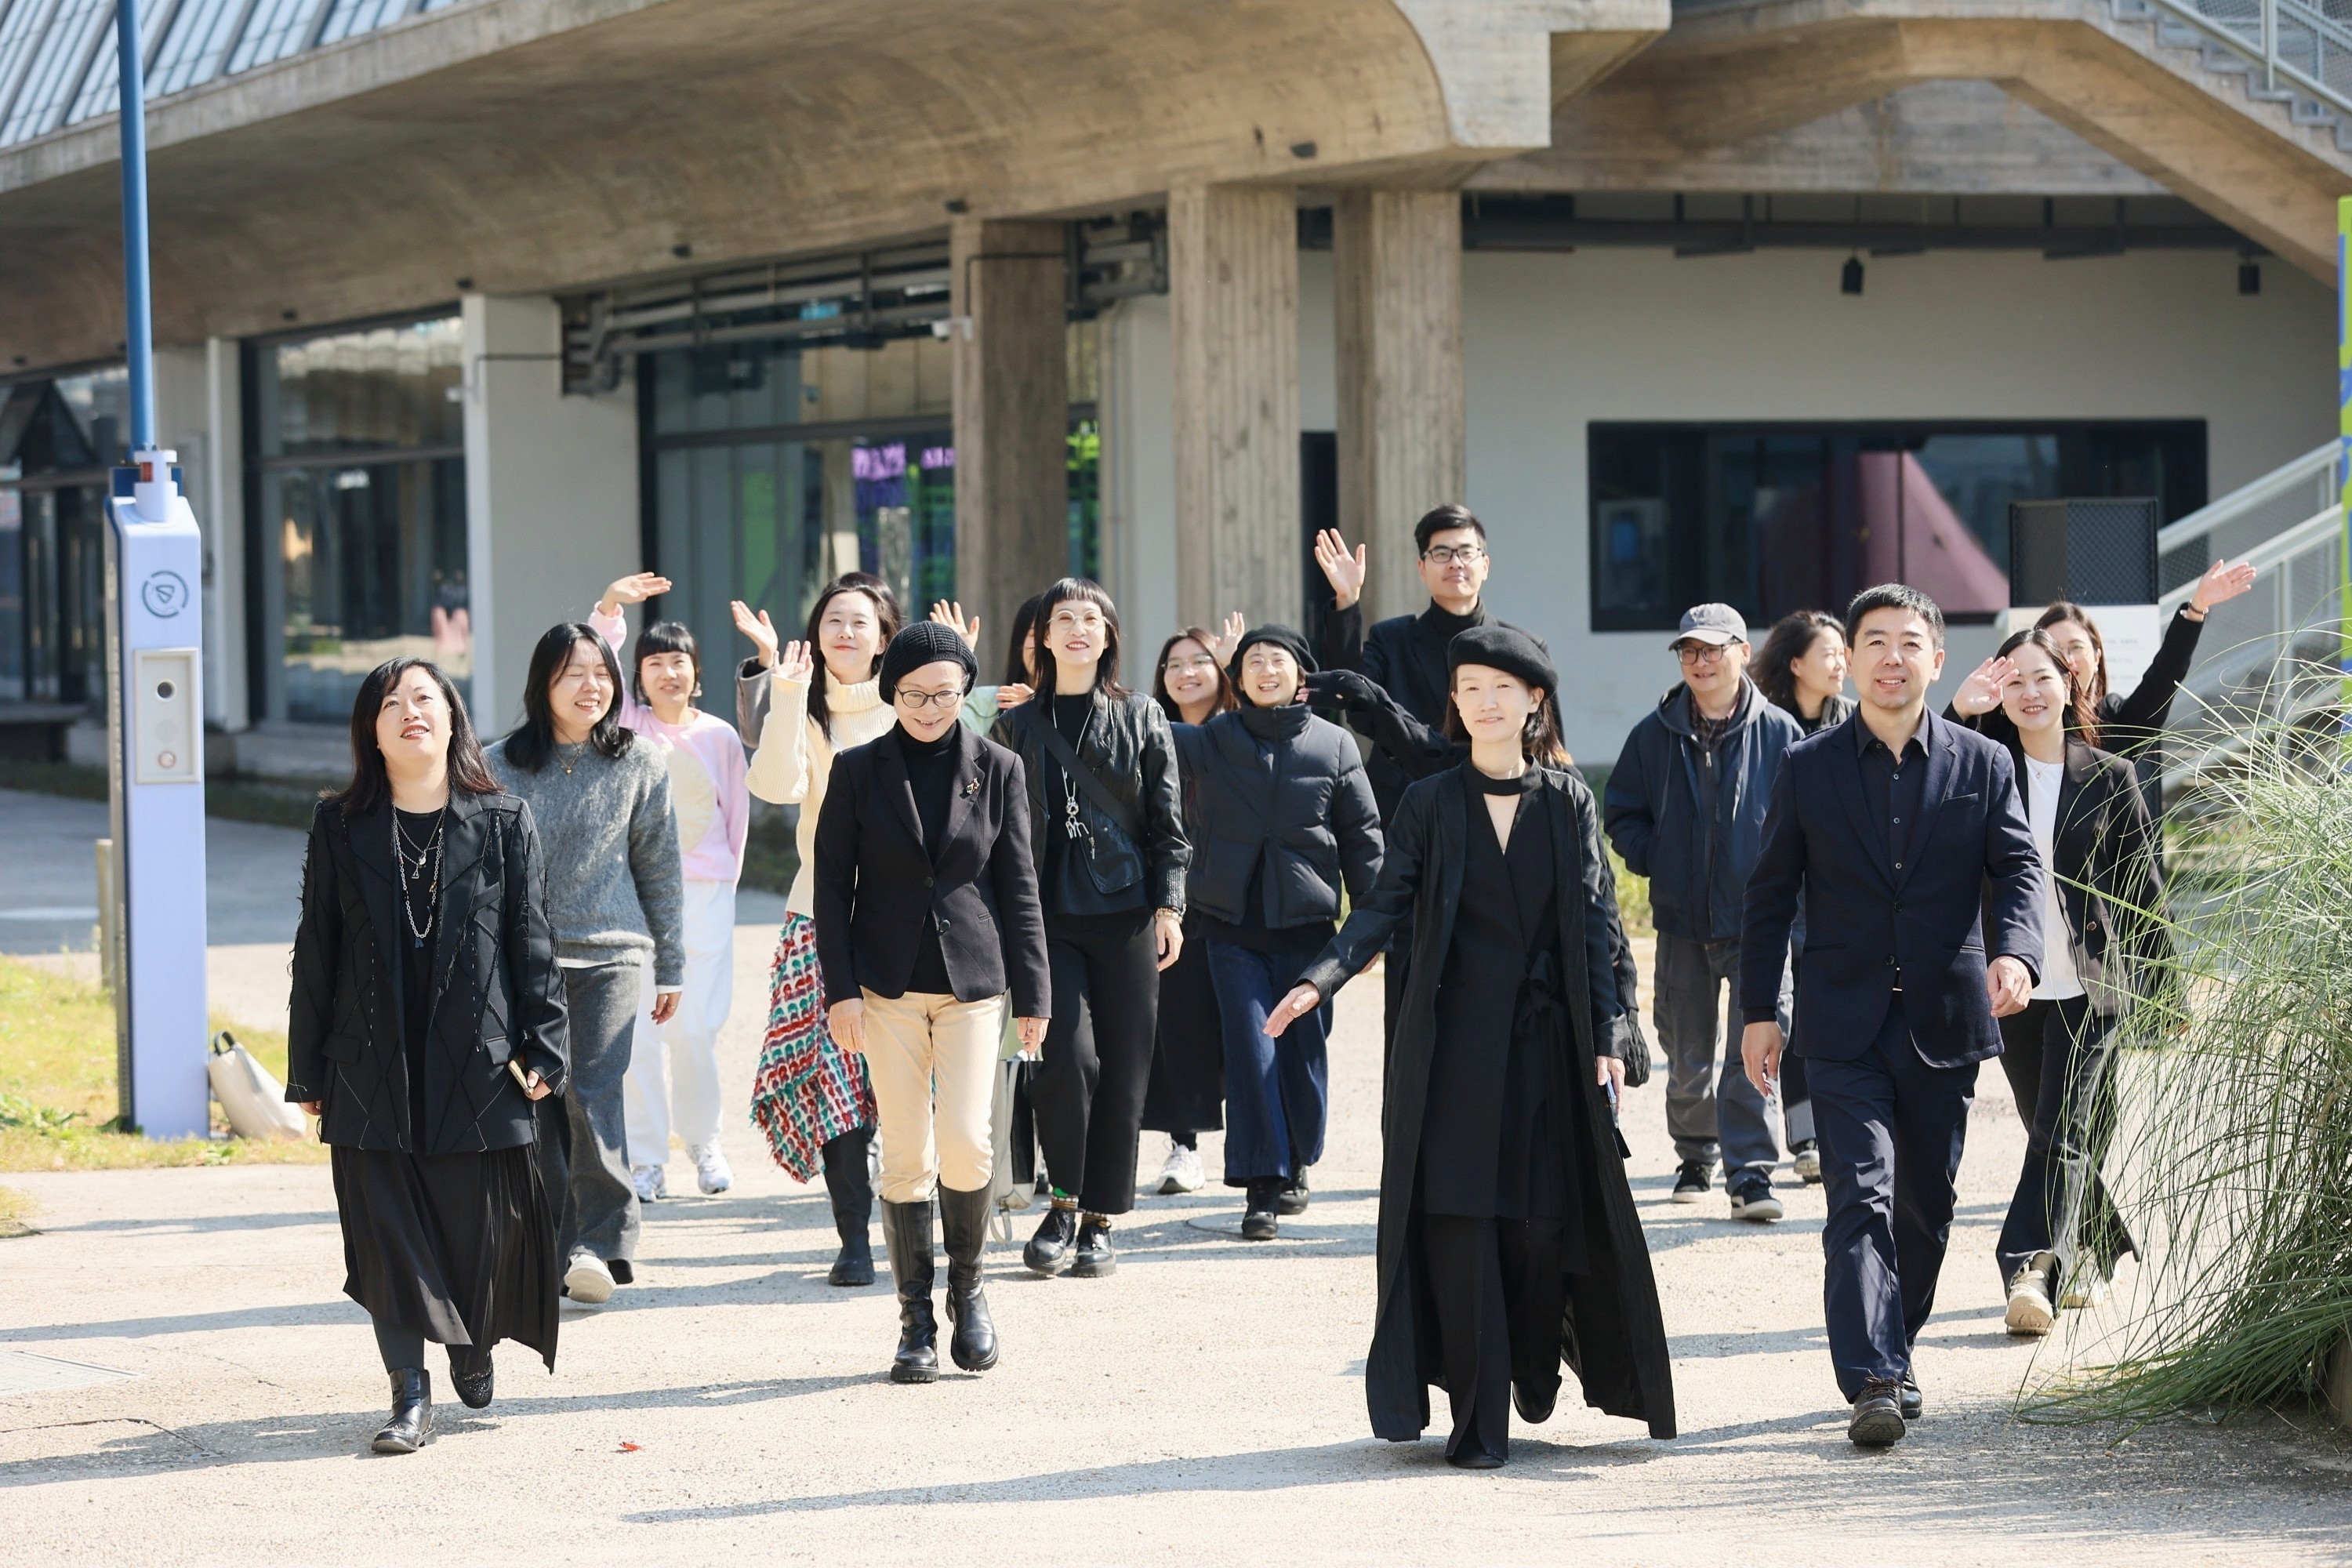 时尚生态 直击脉络——“独立设计师品牌未来时尚生态探讨”学术论坛在杭州成功举办